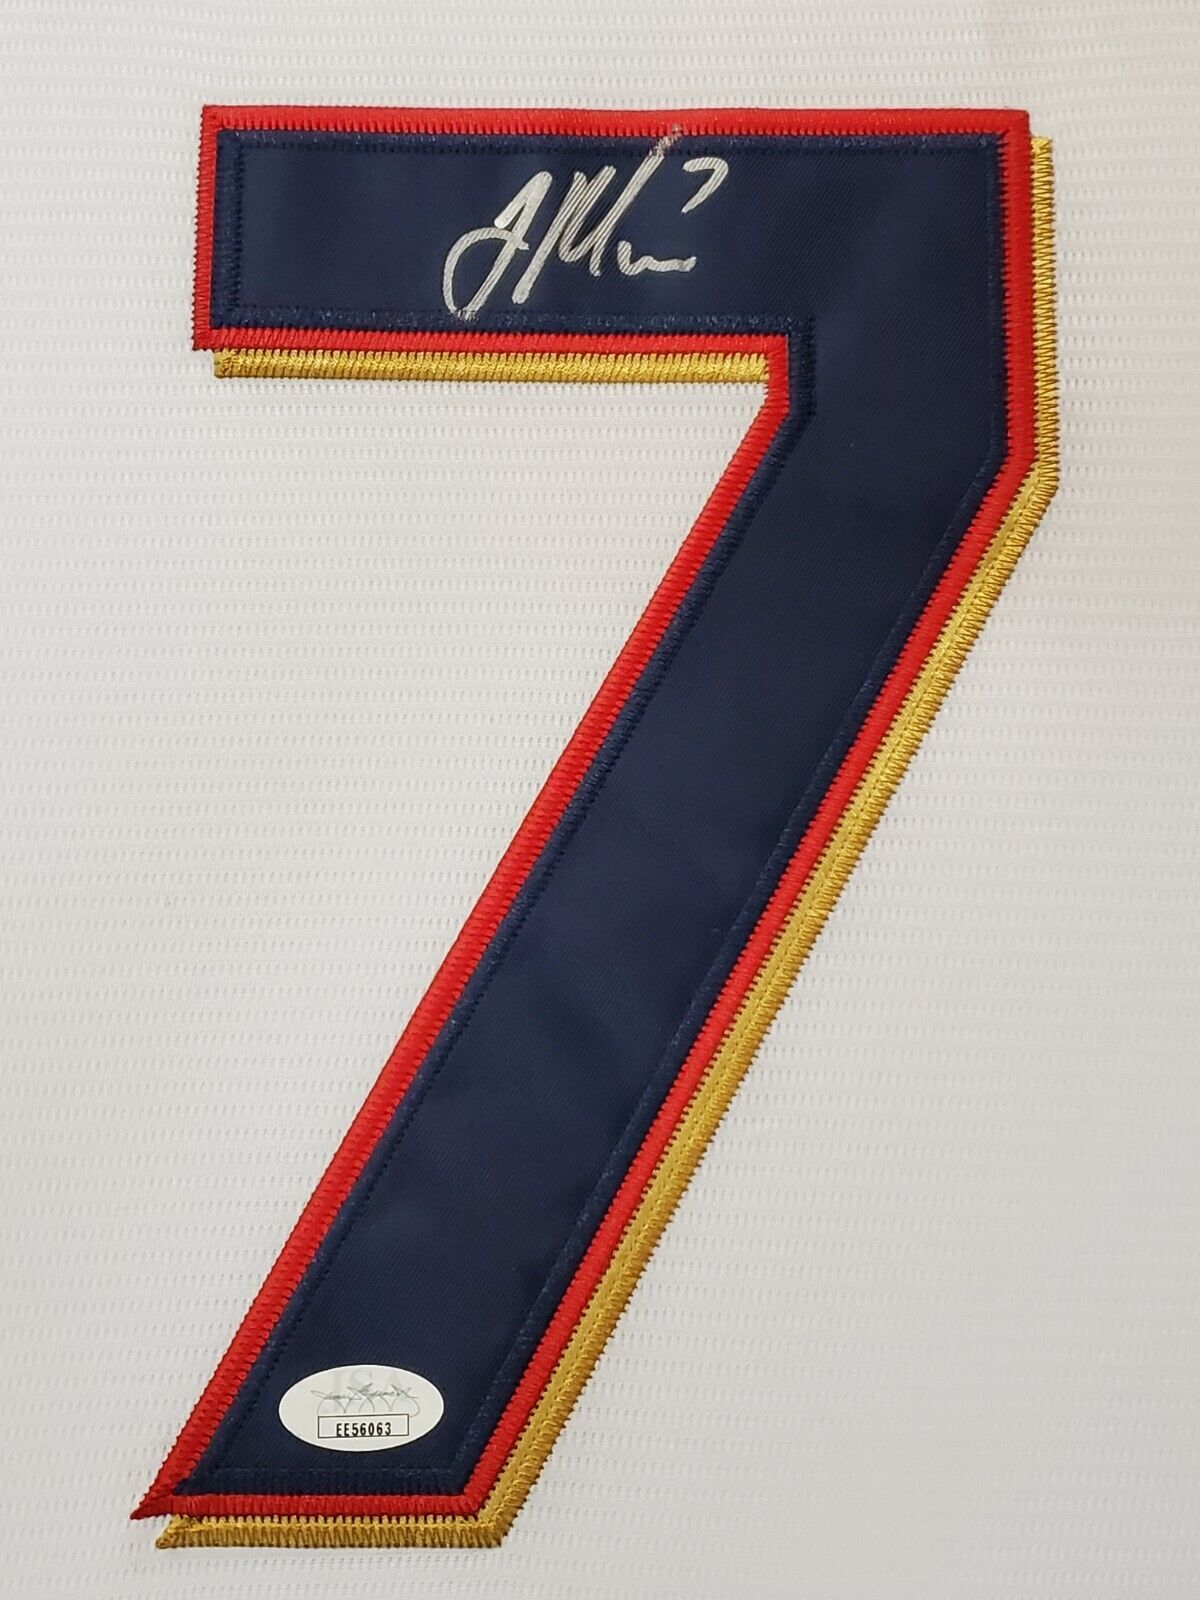 Framed Minnesota Twins Joe Mauer Autographed Signed Jersey Jsa Coa